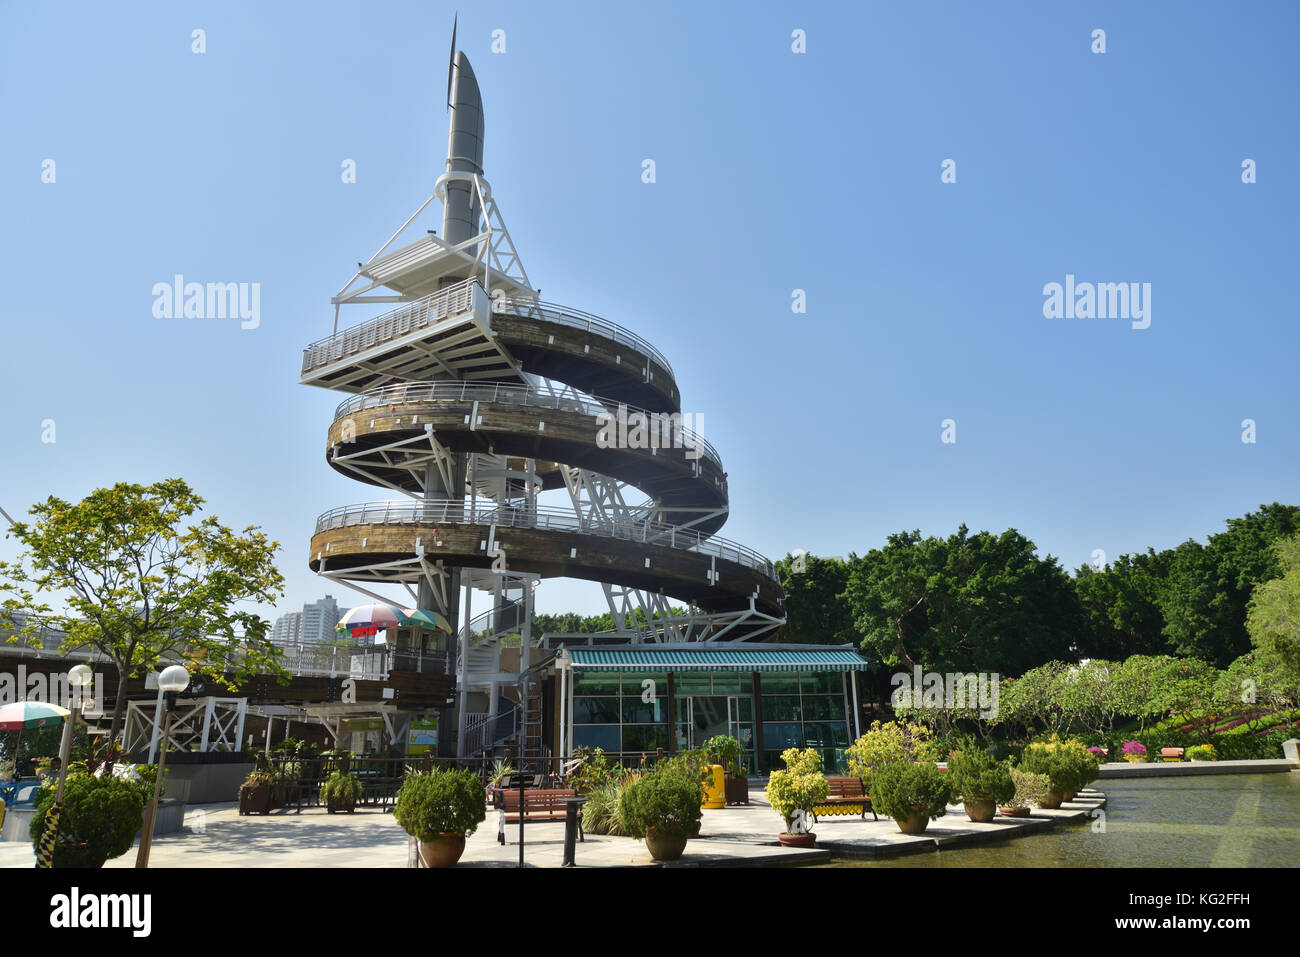 Tour d'observation en spirale à Tai Po Waterfront Park, Hong Kong. Il a été construit pour commémorer le passage de la souveraineté de Hong Kong à la Chine. Banque D'Images